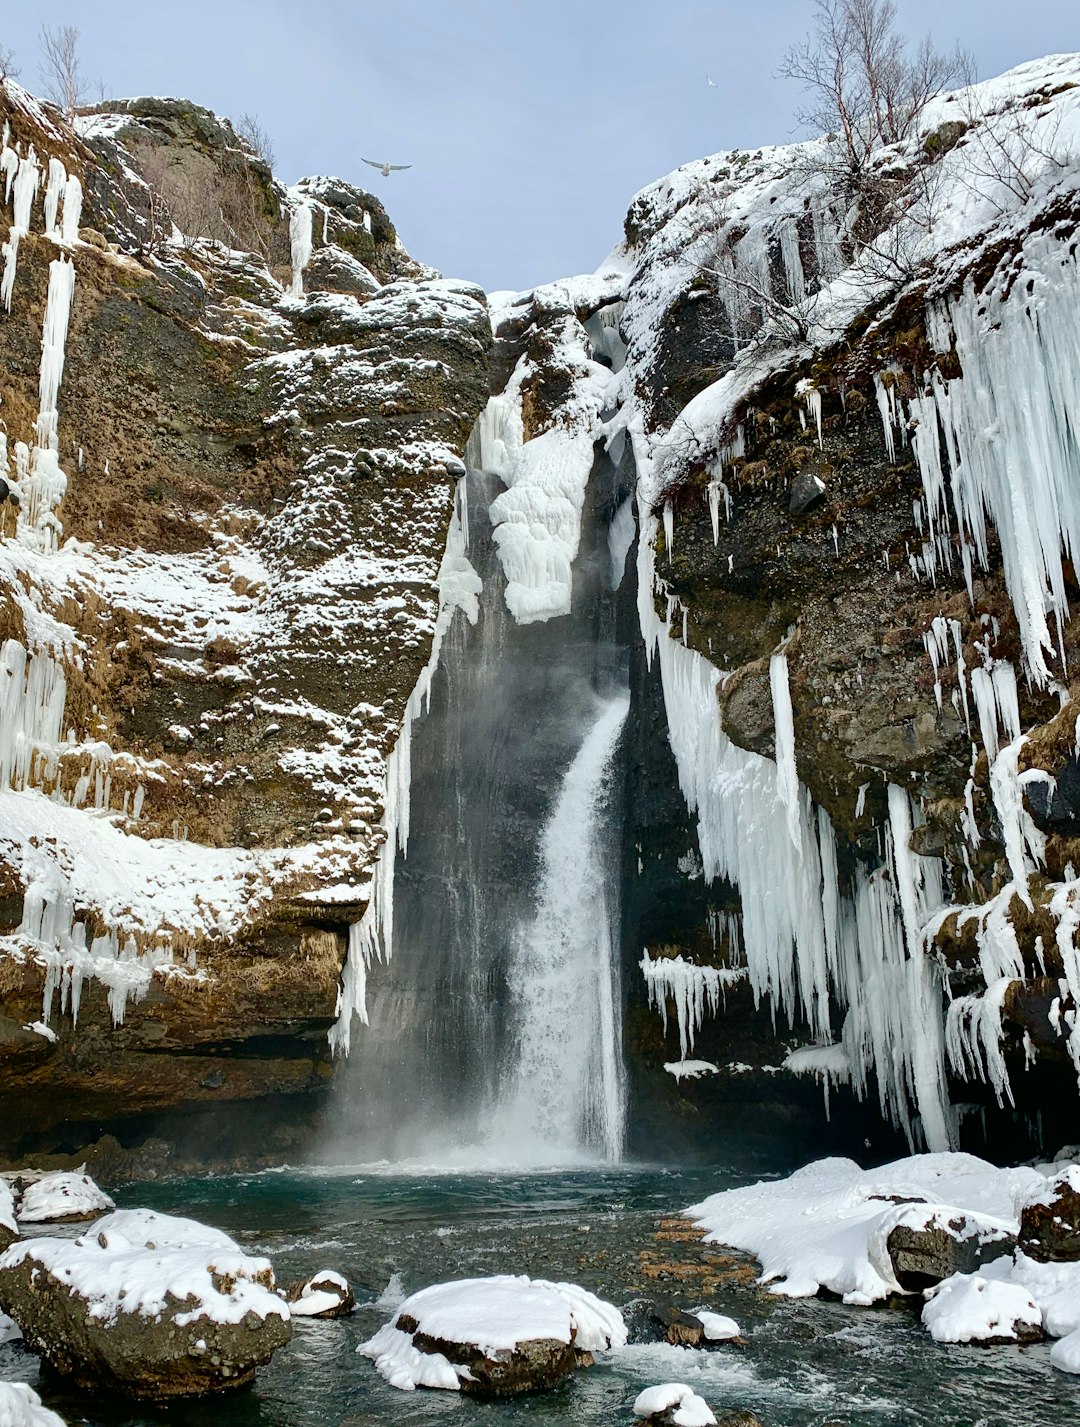 Waterfall photo spot Gluggafossavegur Kvernufoss waterfall